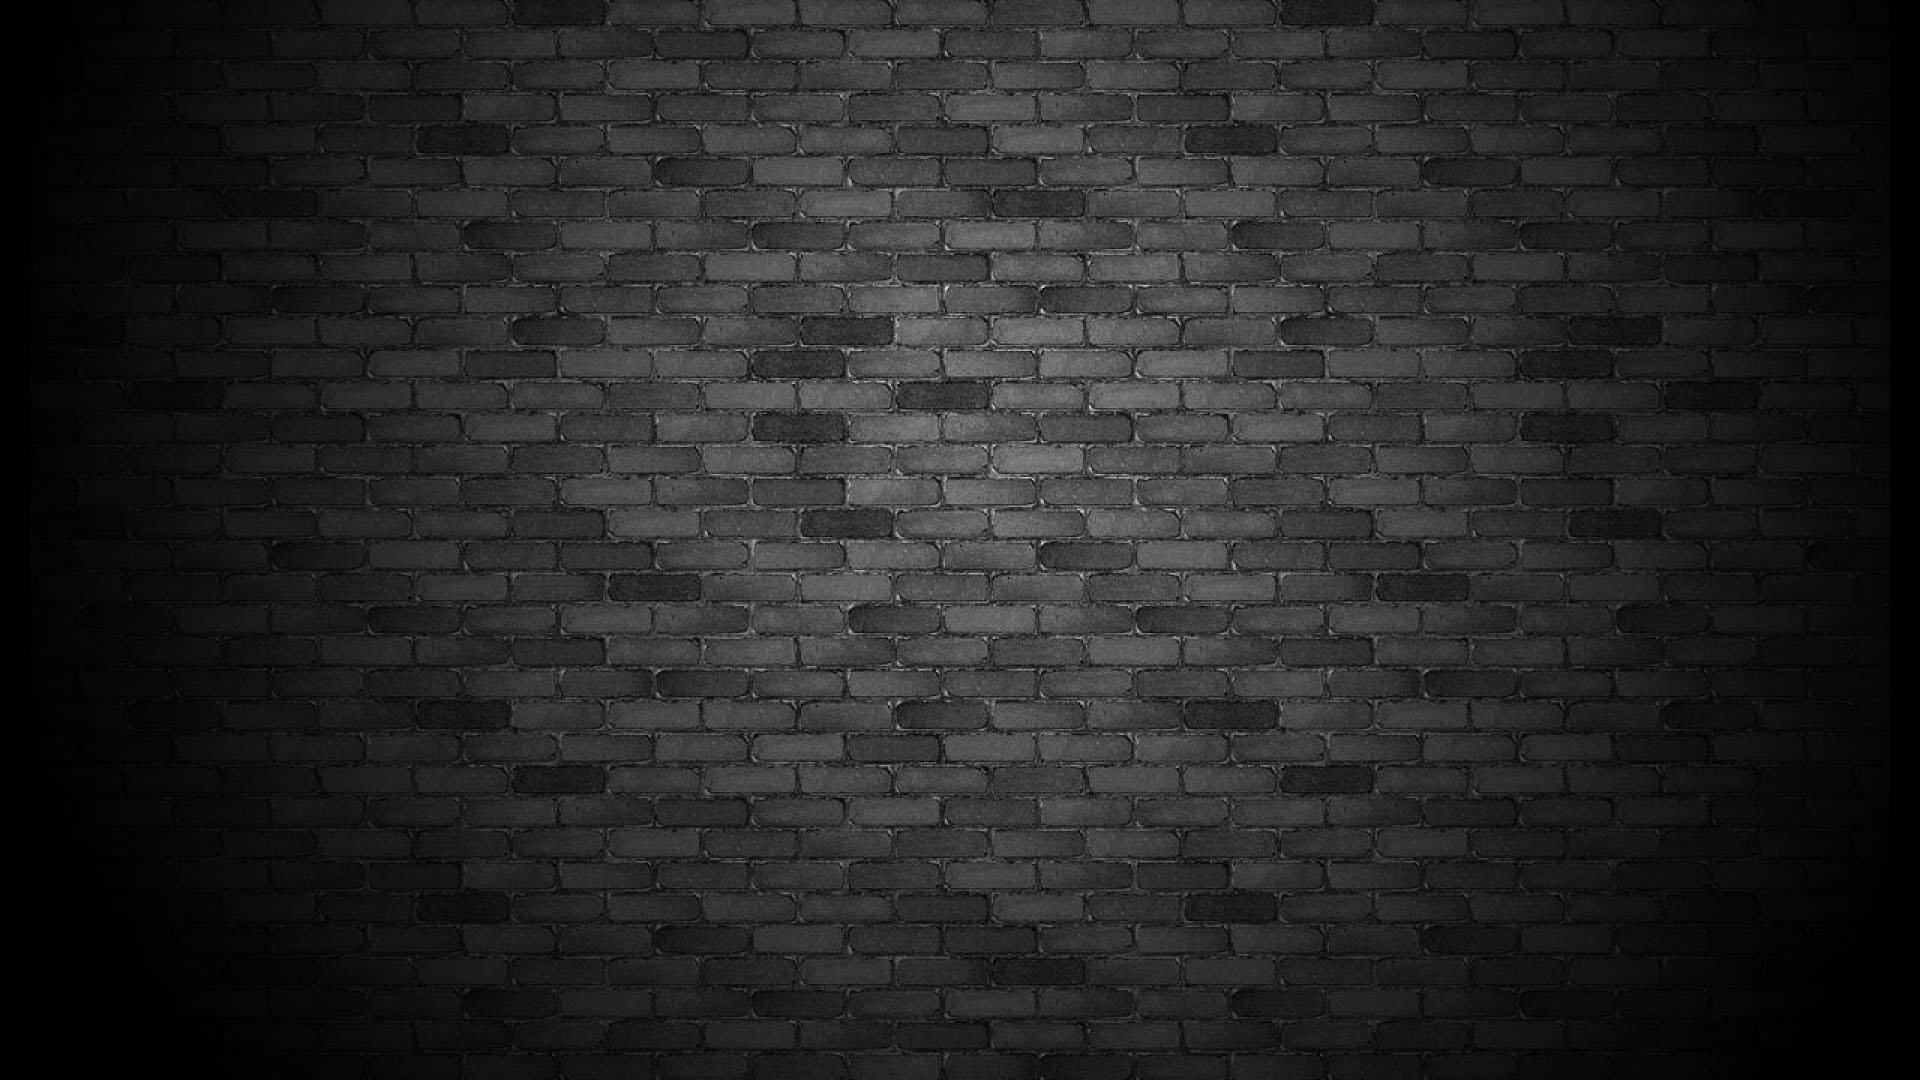 Dark Brick Wall Background Black